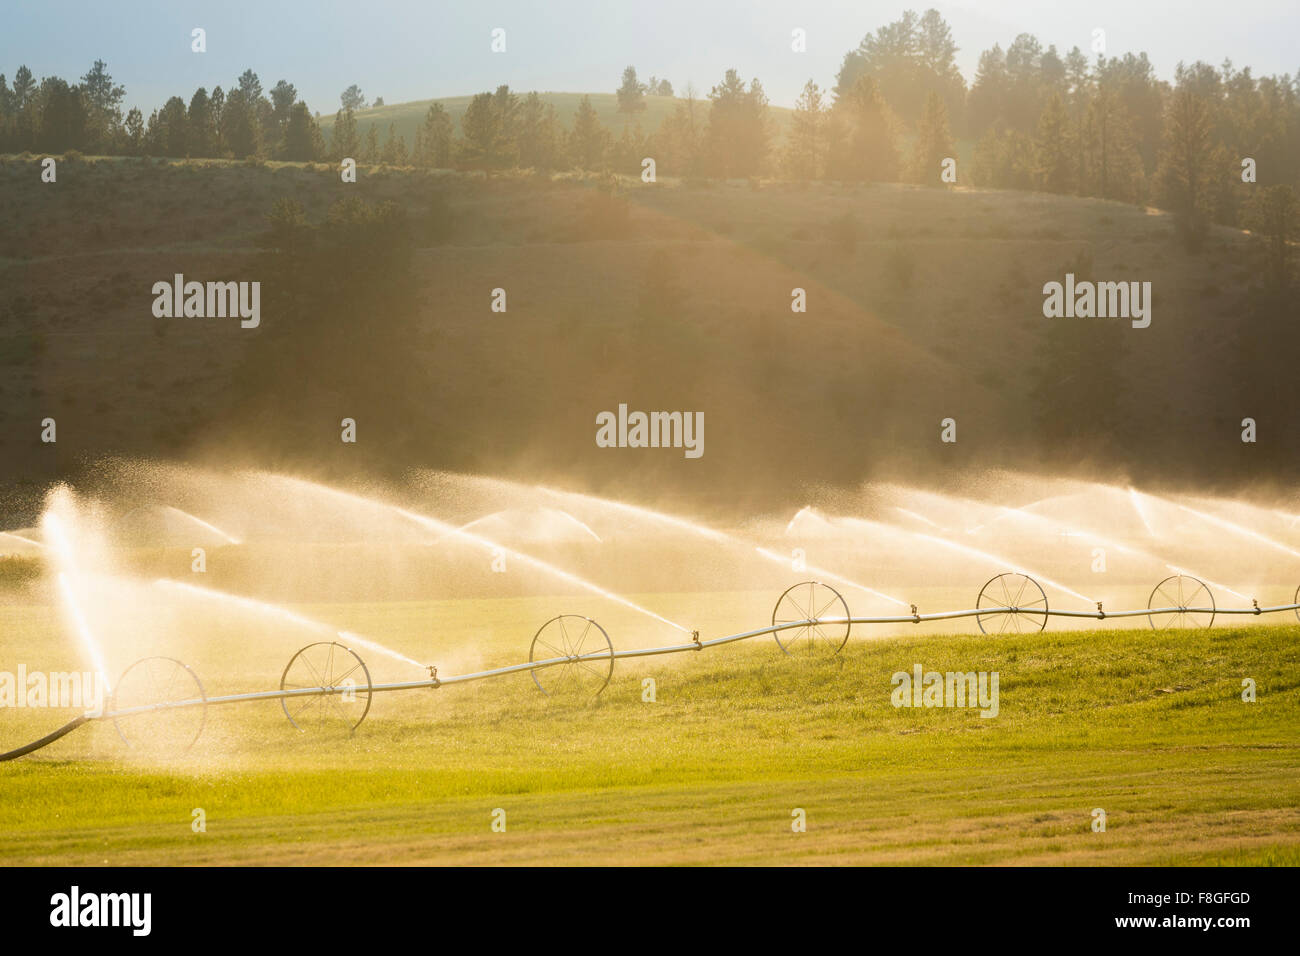 Sistema de Riego el riego de los cultivos en el campo agrícola Foto de stock